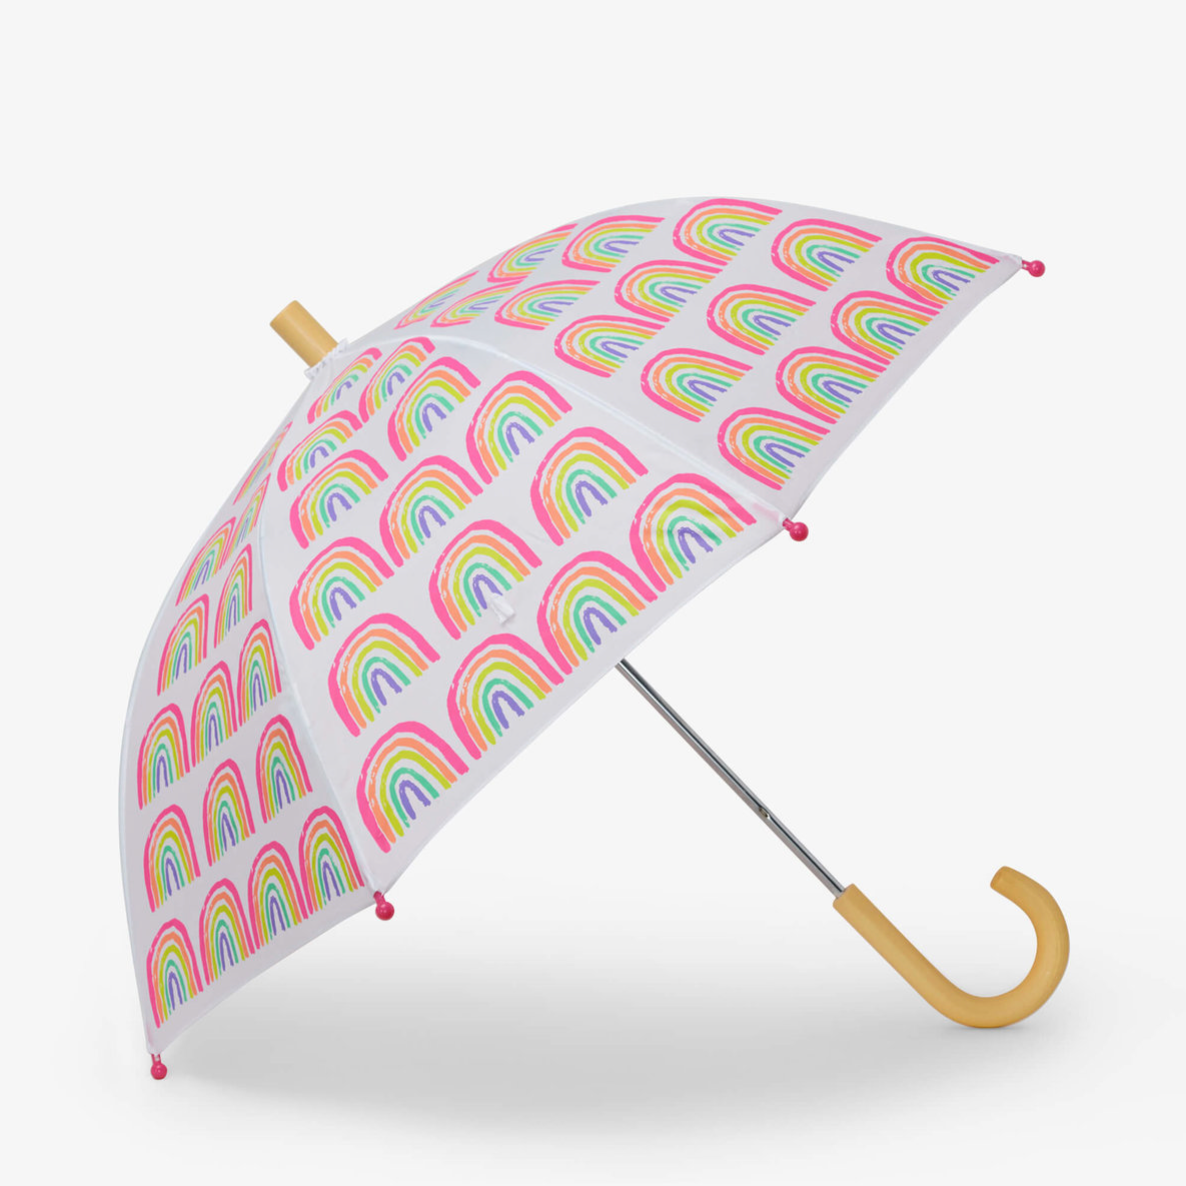 Load image into Gallery viewer, Hatley Pretty Rainbows Umbrella
